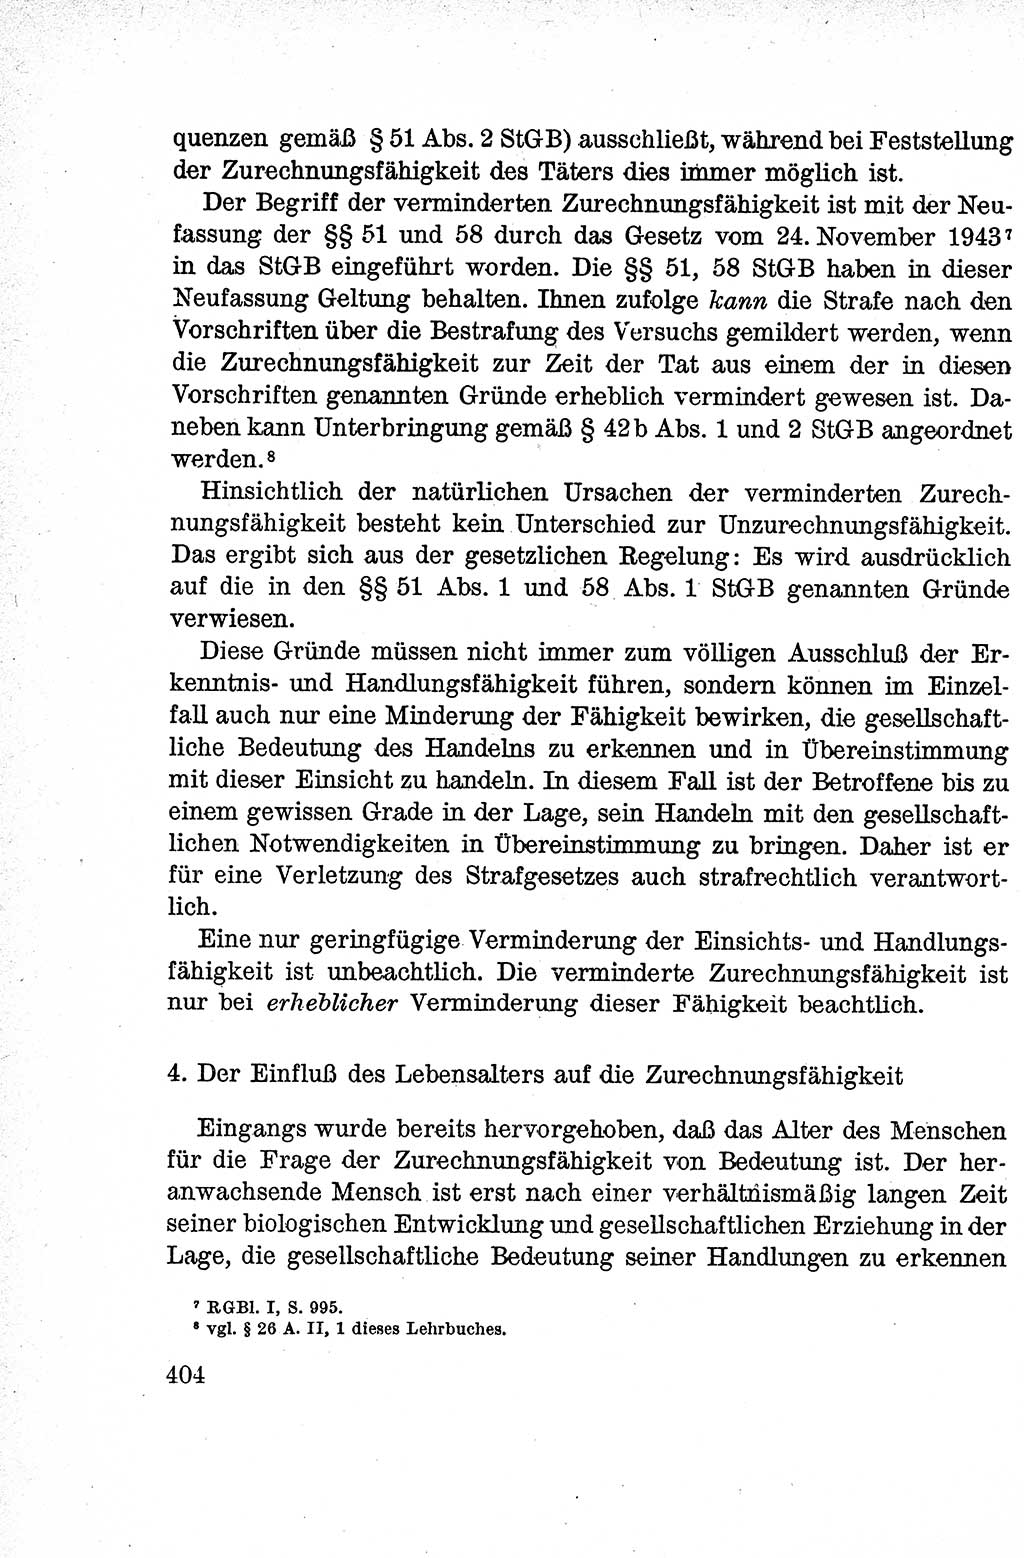 Lehrbuch des Strafrechts der Deutschen Demokratischen Republik (DDR), Allgemeiner Teil 1959, Seite 404 (Lb. Strafr. DDR AT 1959, S. 404)